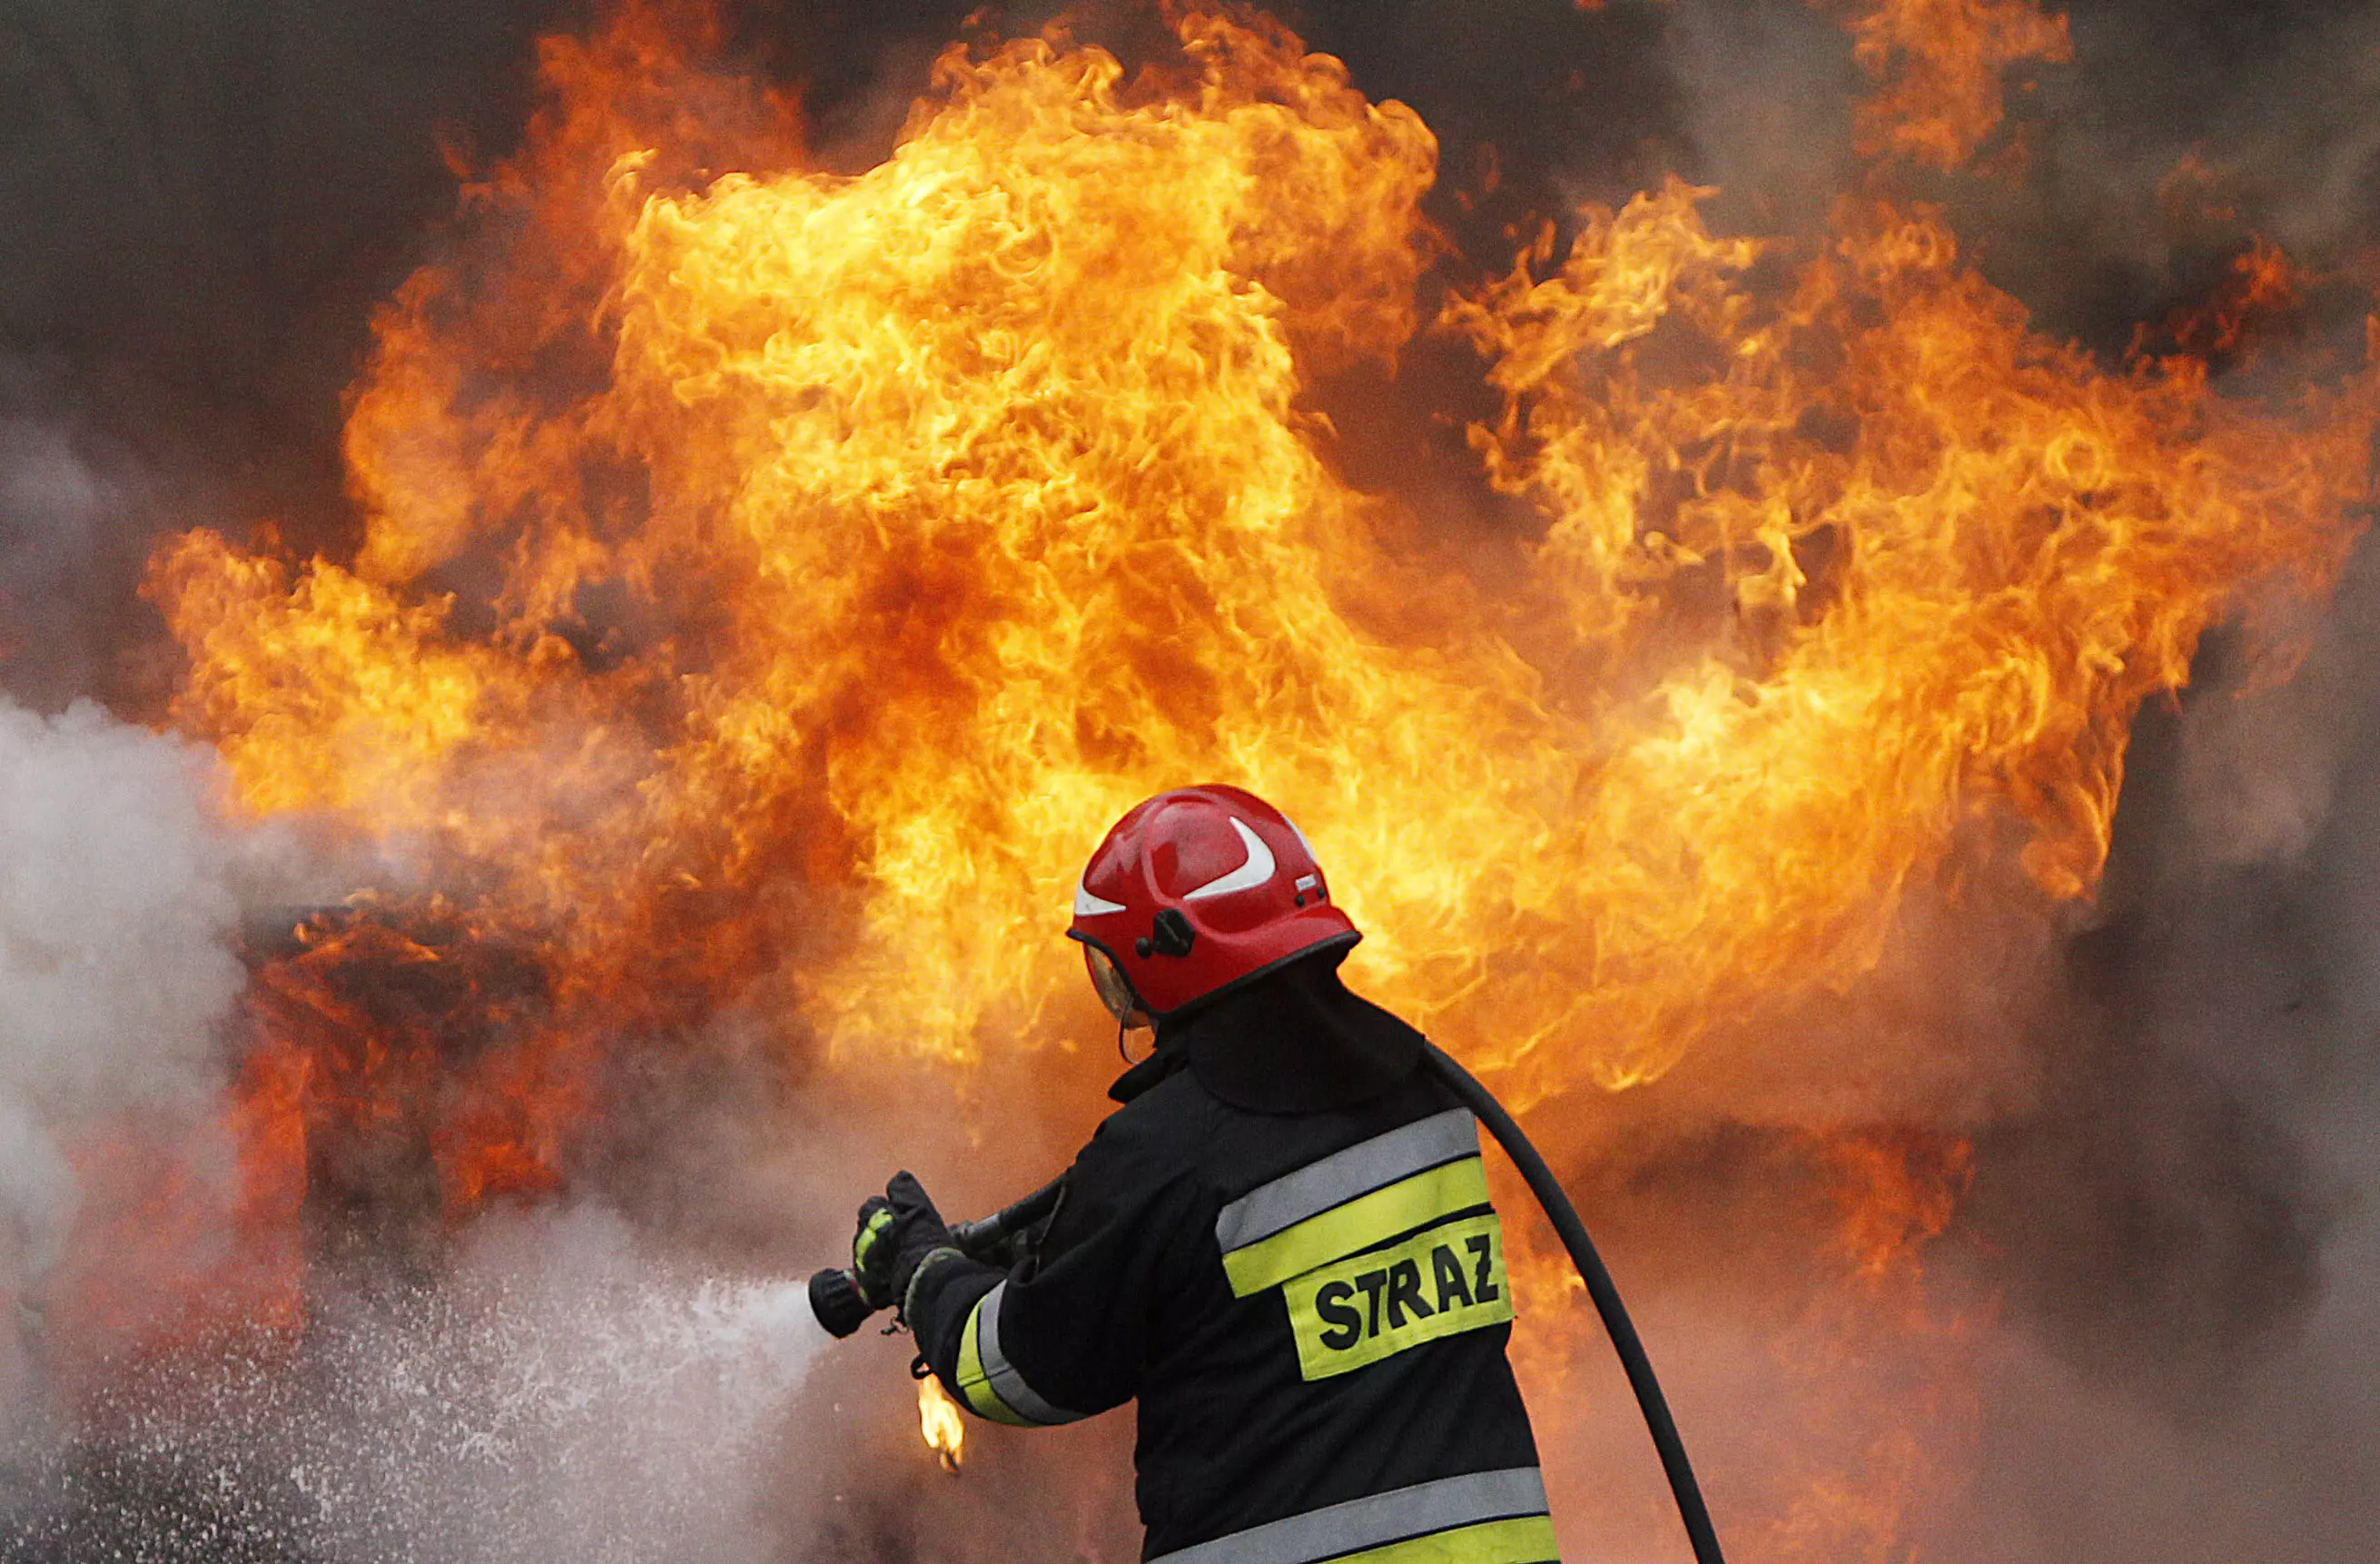 "מיד הזעיקו את המורים והתחילו בפעולות חילוץ". שריפה בפולין